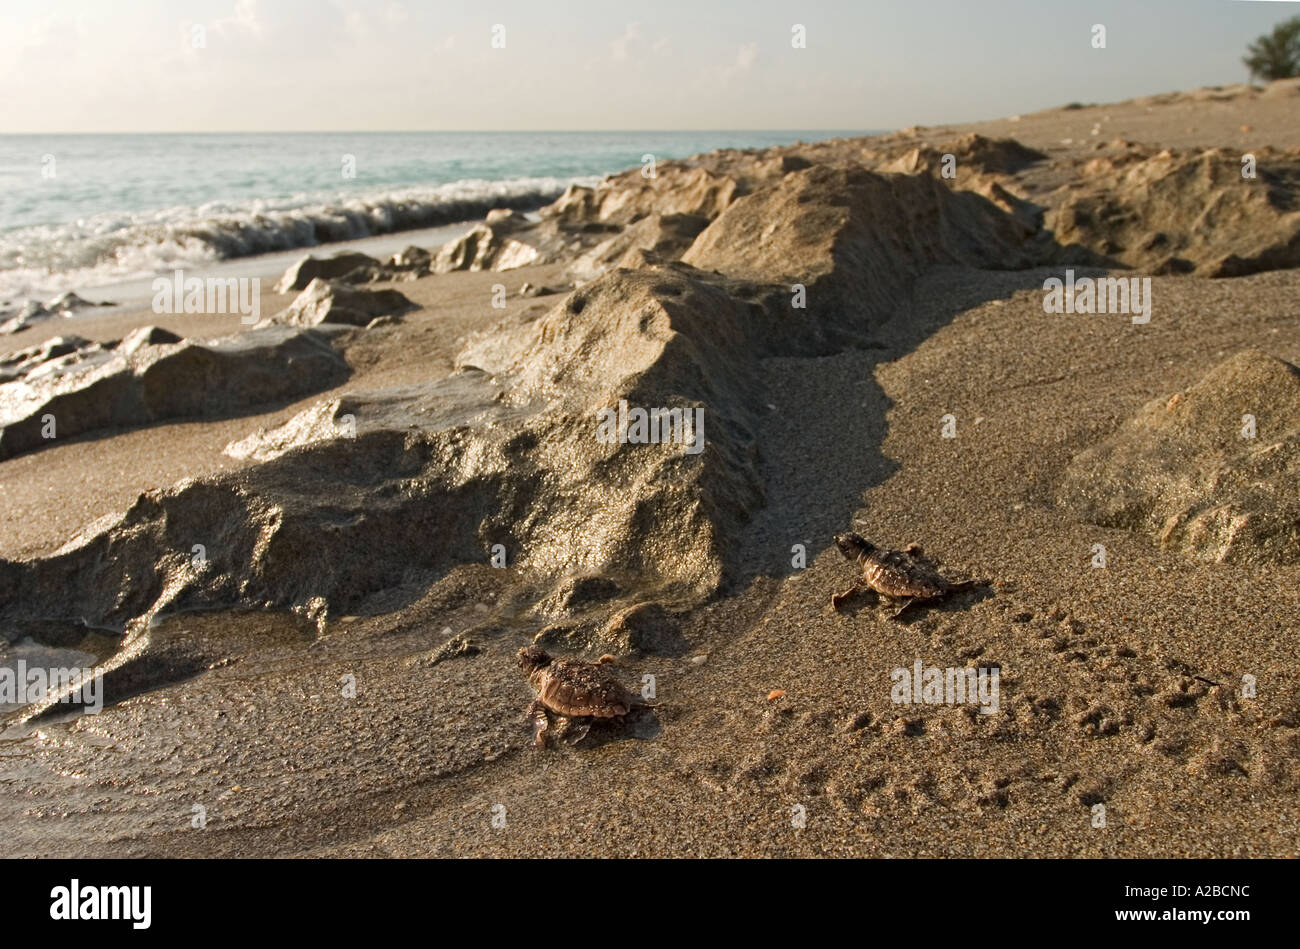 Tortue de mer loggerhead tortues font leur chemin à travers les rochers et le sable humide à l'océan. Centre Juno Beach, Florida, USA. Banque D'Images